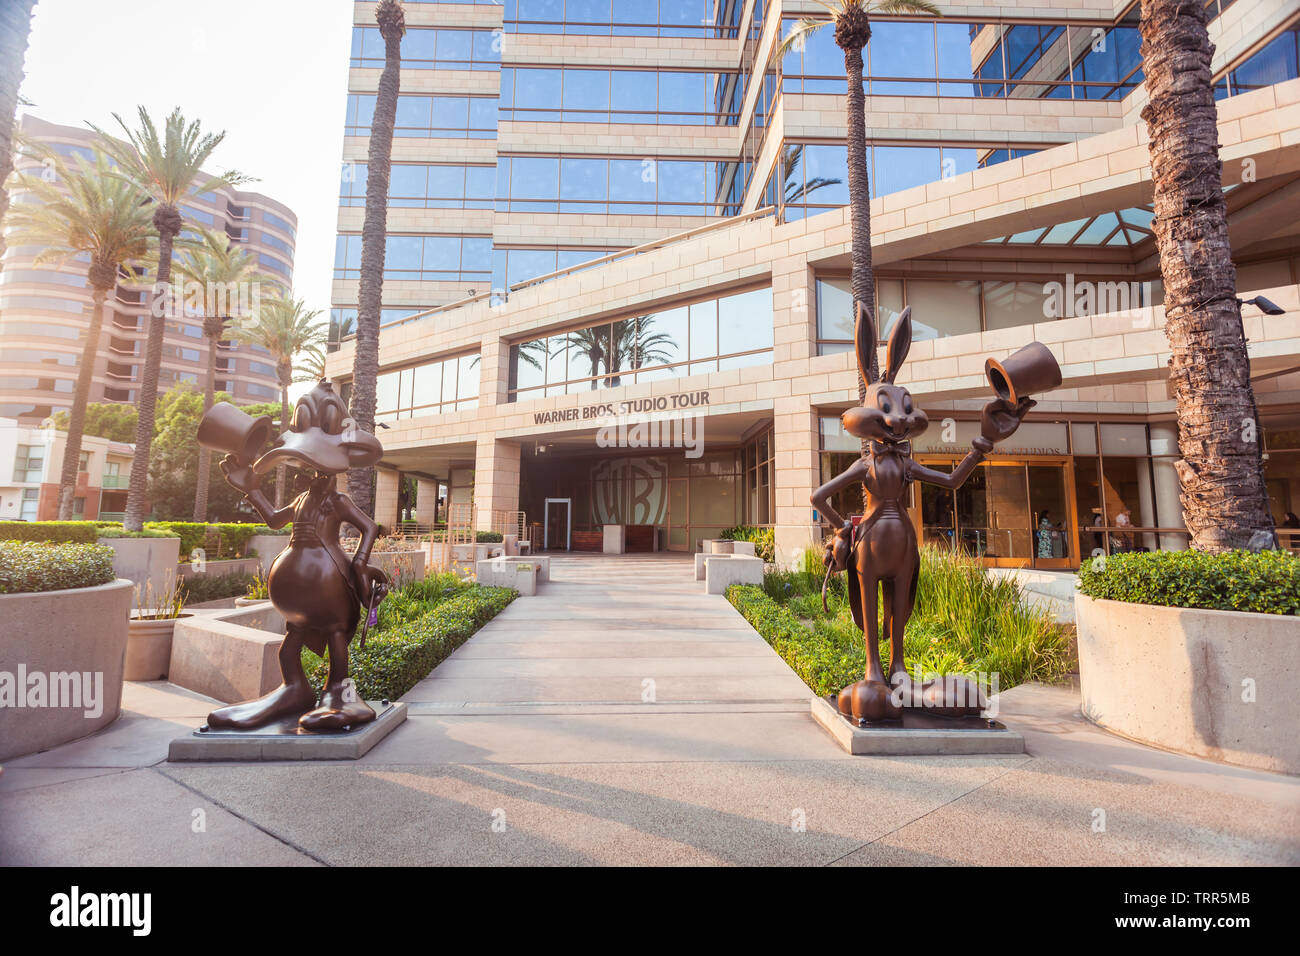 BURBANK, Kalifornien - 11. August 2018: Der Zutritt zu Warner Brothers Studio Tour mit Bugs Bunny und Duffy Duck Statuen am Eingang, die beliebte Stockfoto